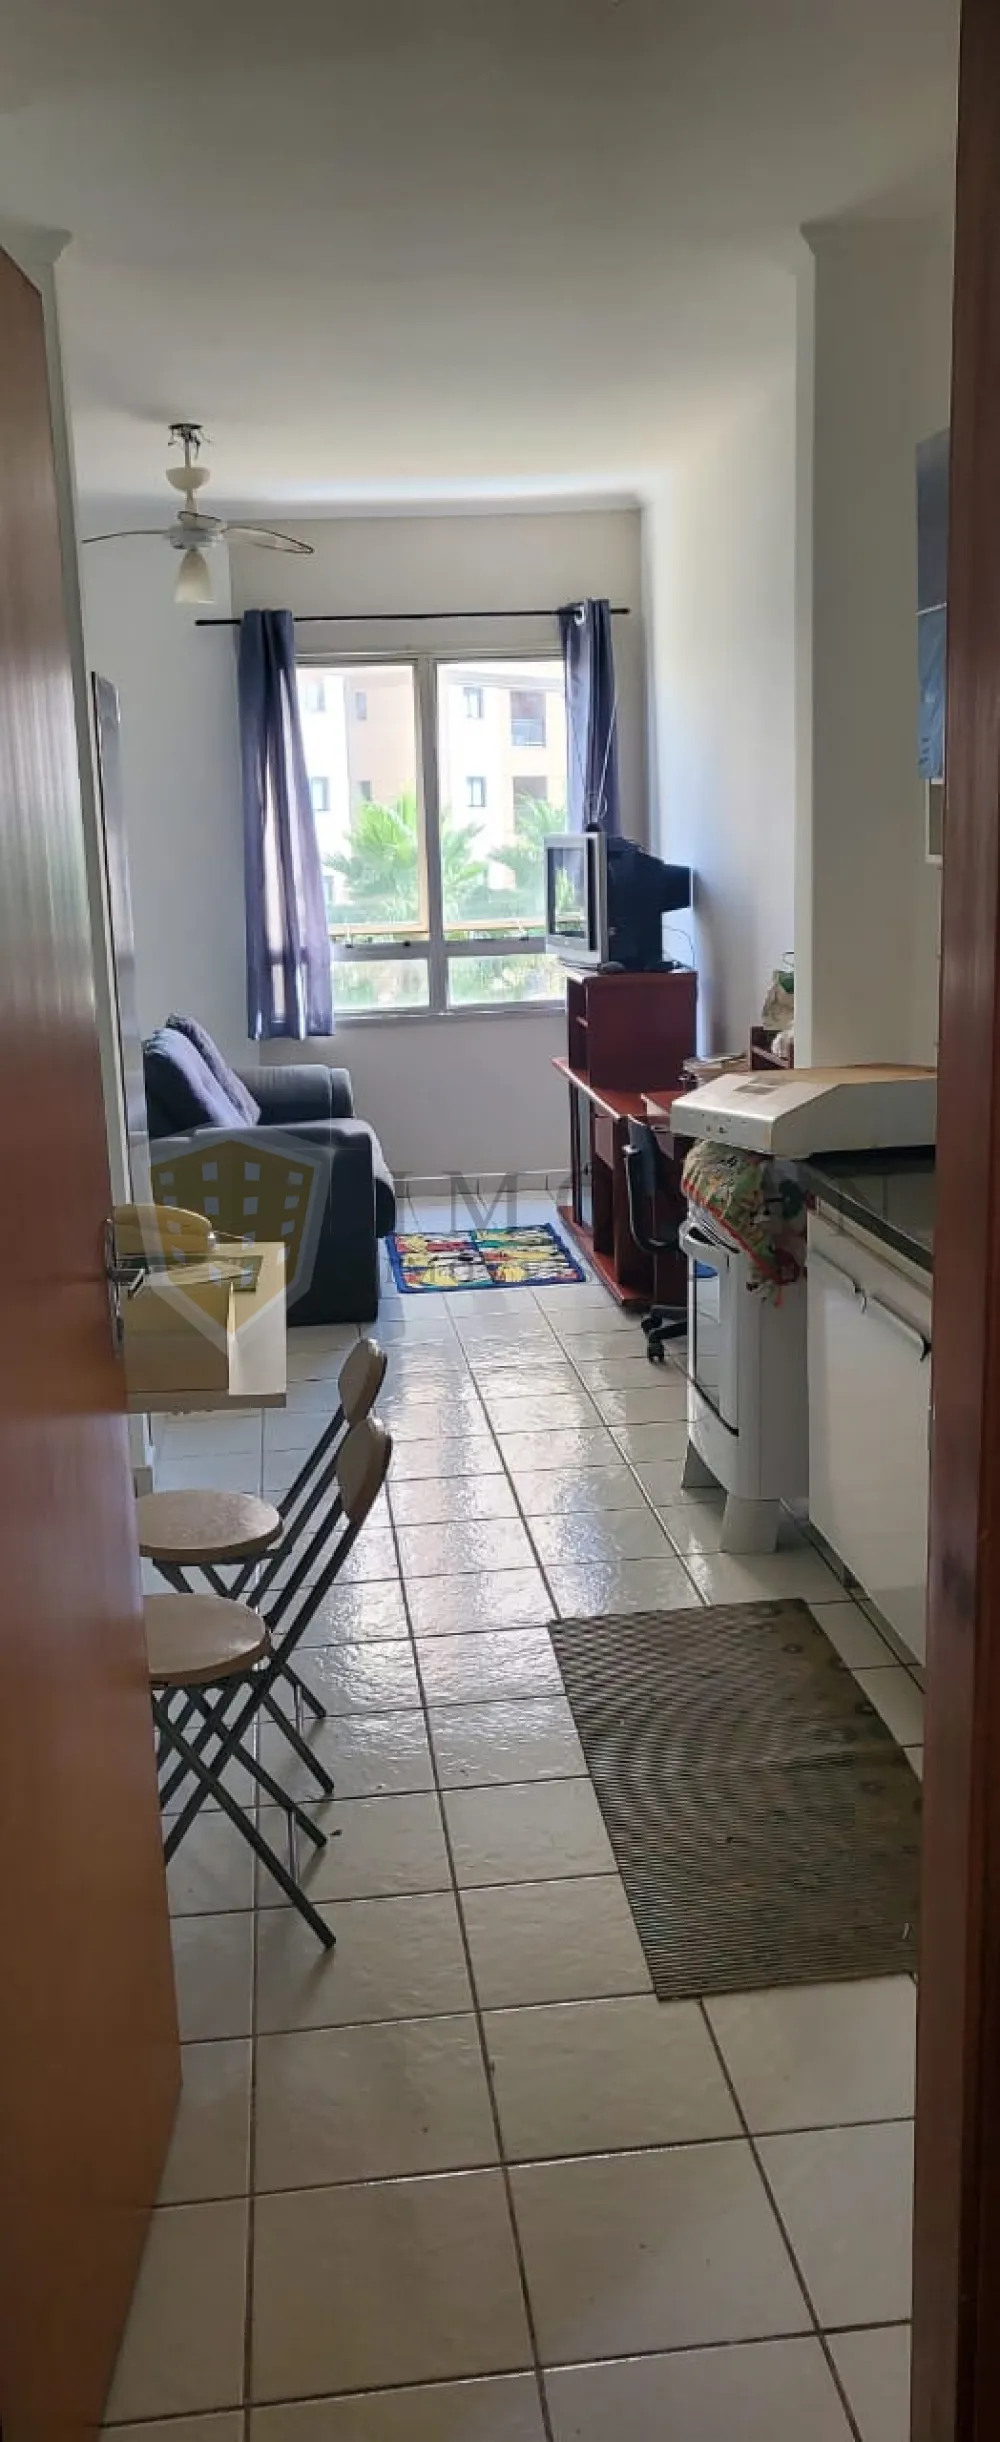 Comprar Apartamento / Kitchnet em Ribeirão Preto R$ 170.000,00 - Foto 3